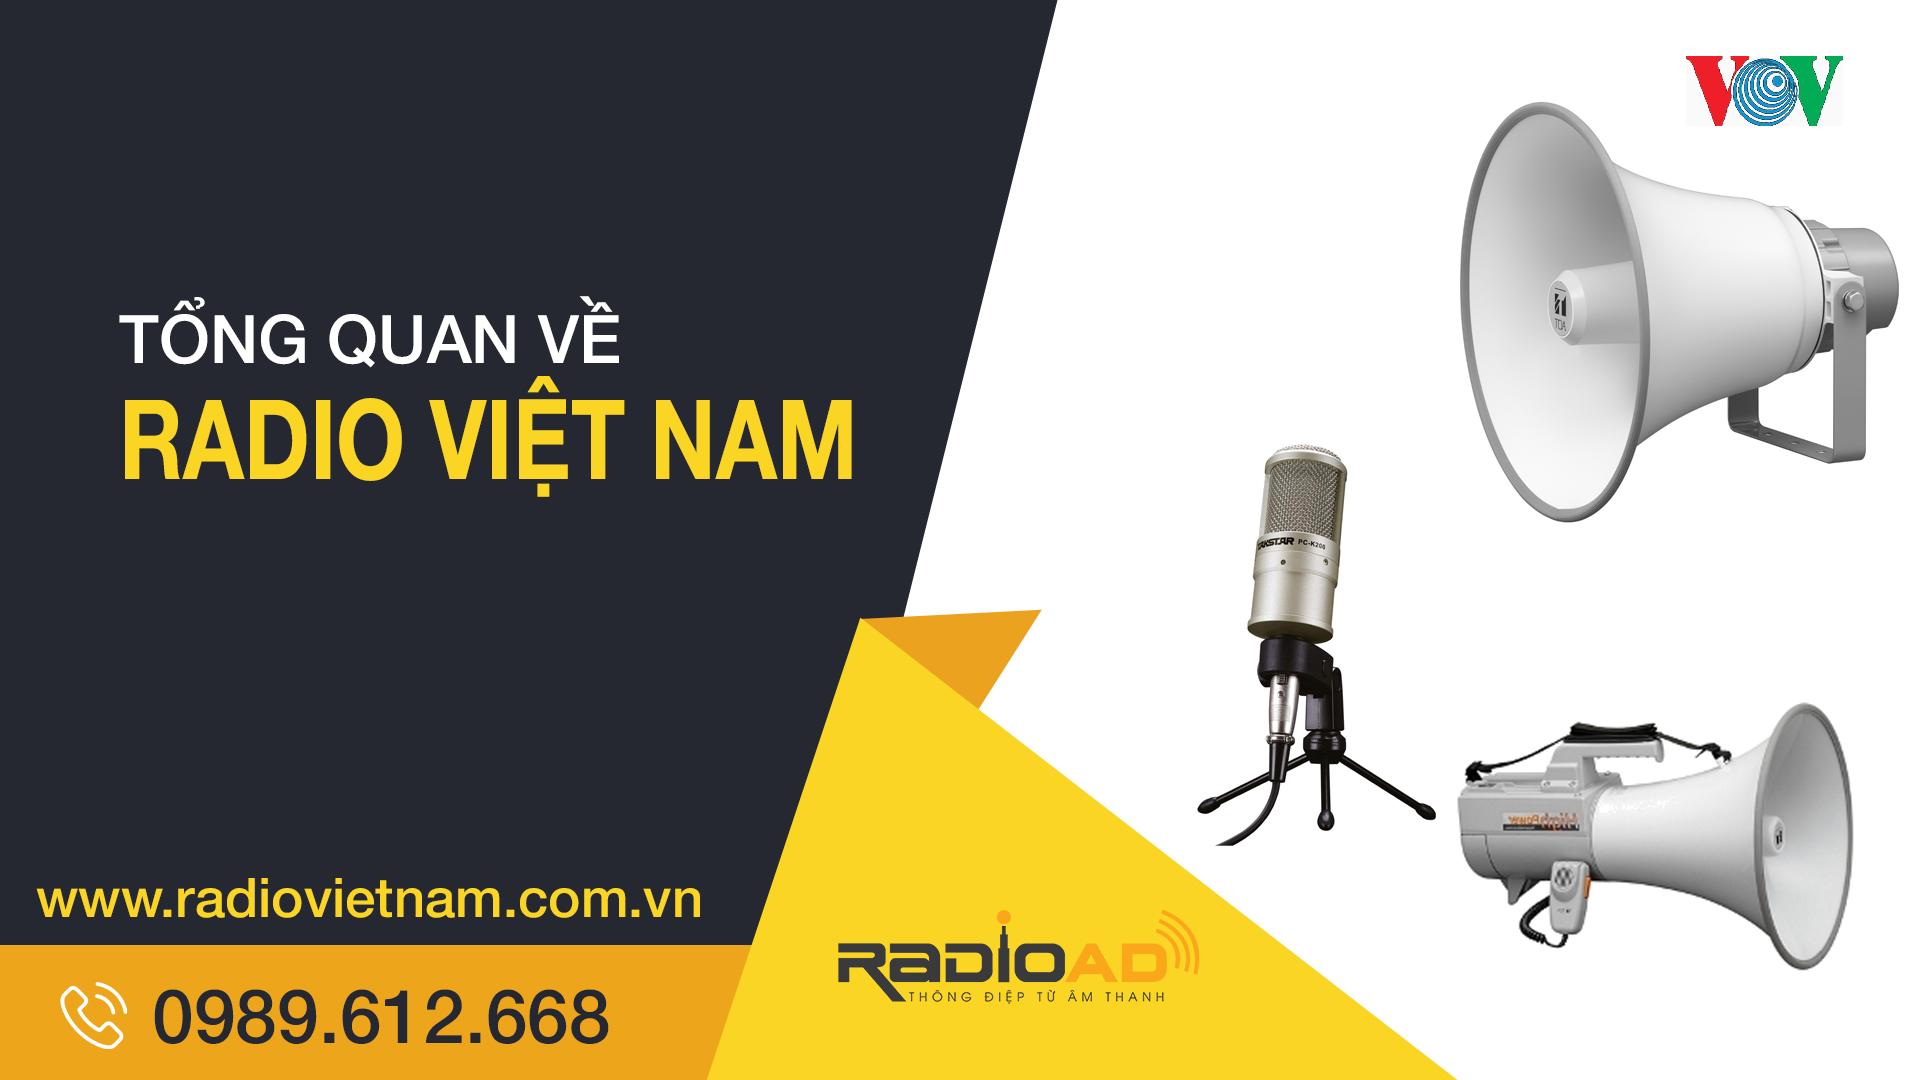 Tổng quan về Radio Việt Nam